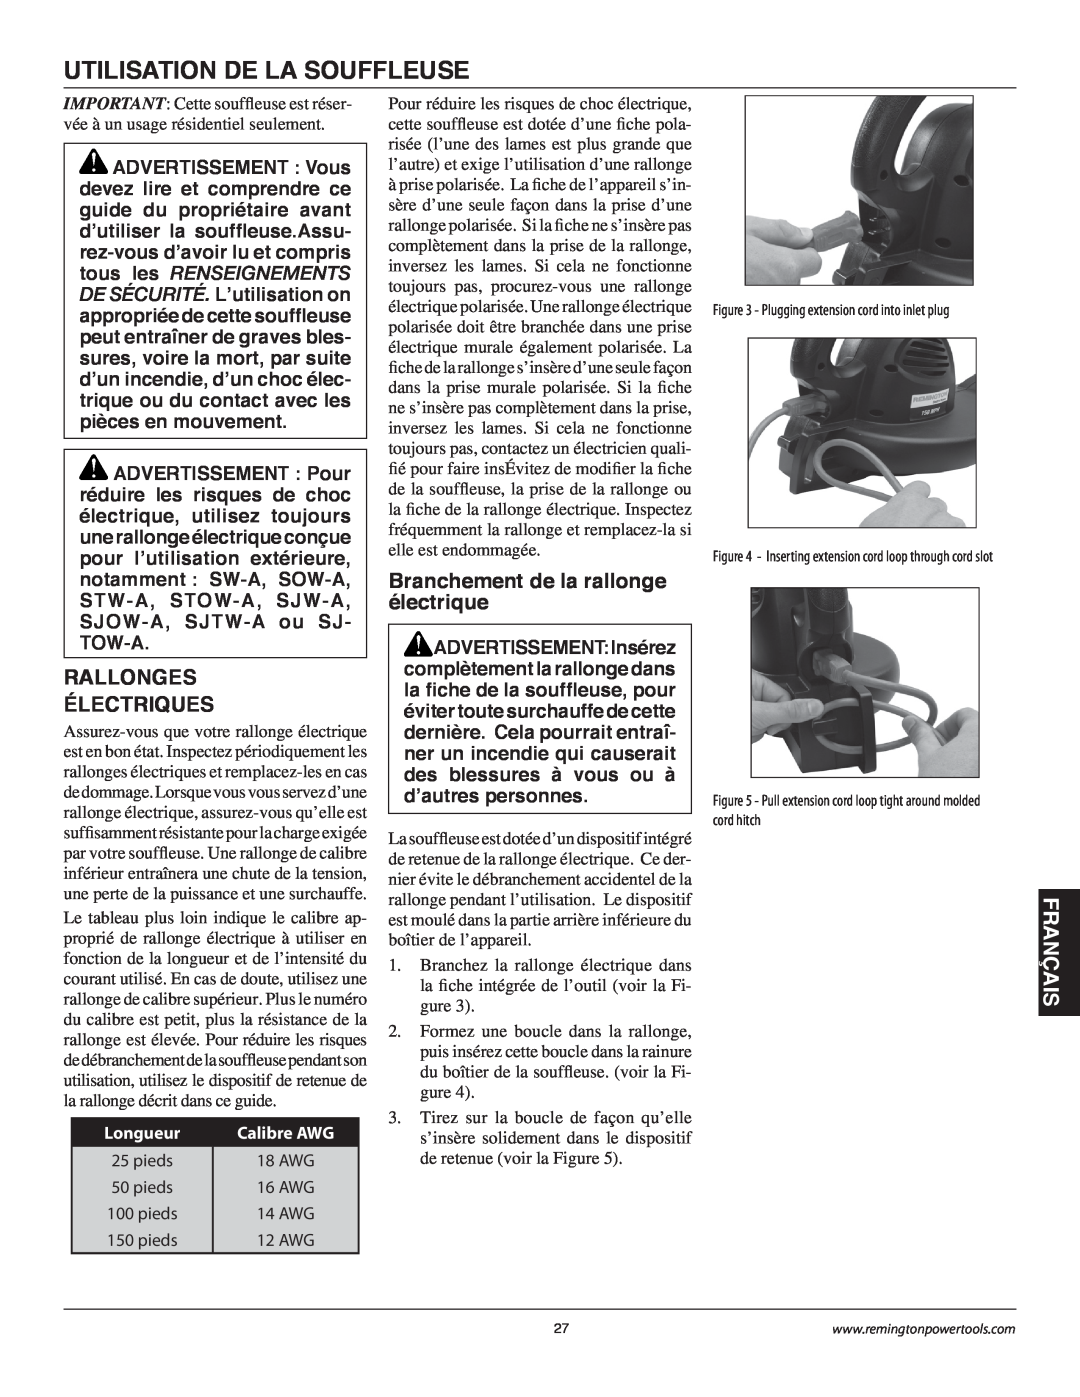 Remington B75150A Utilisation De La Souffleuse, Rallonges Électriques, Branchement de la rallonge électrique, Français 